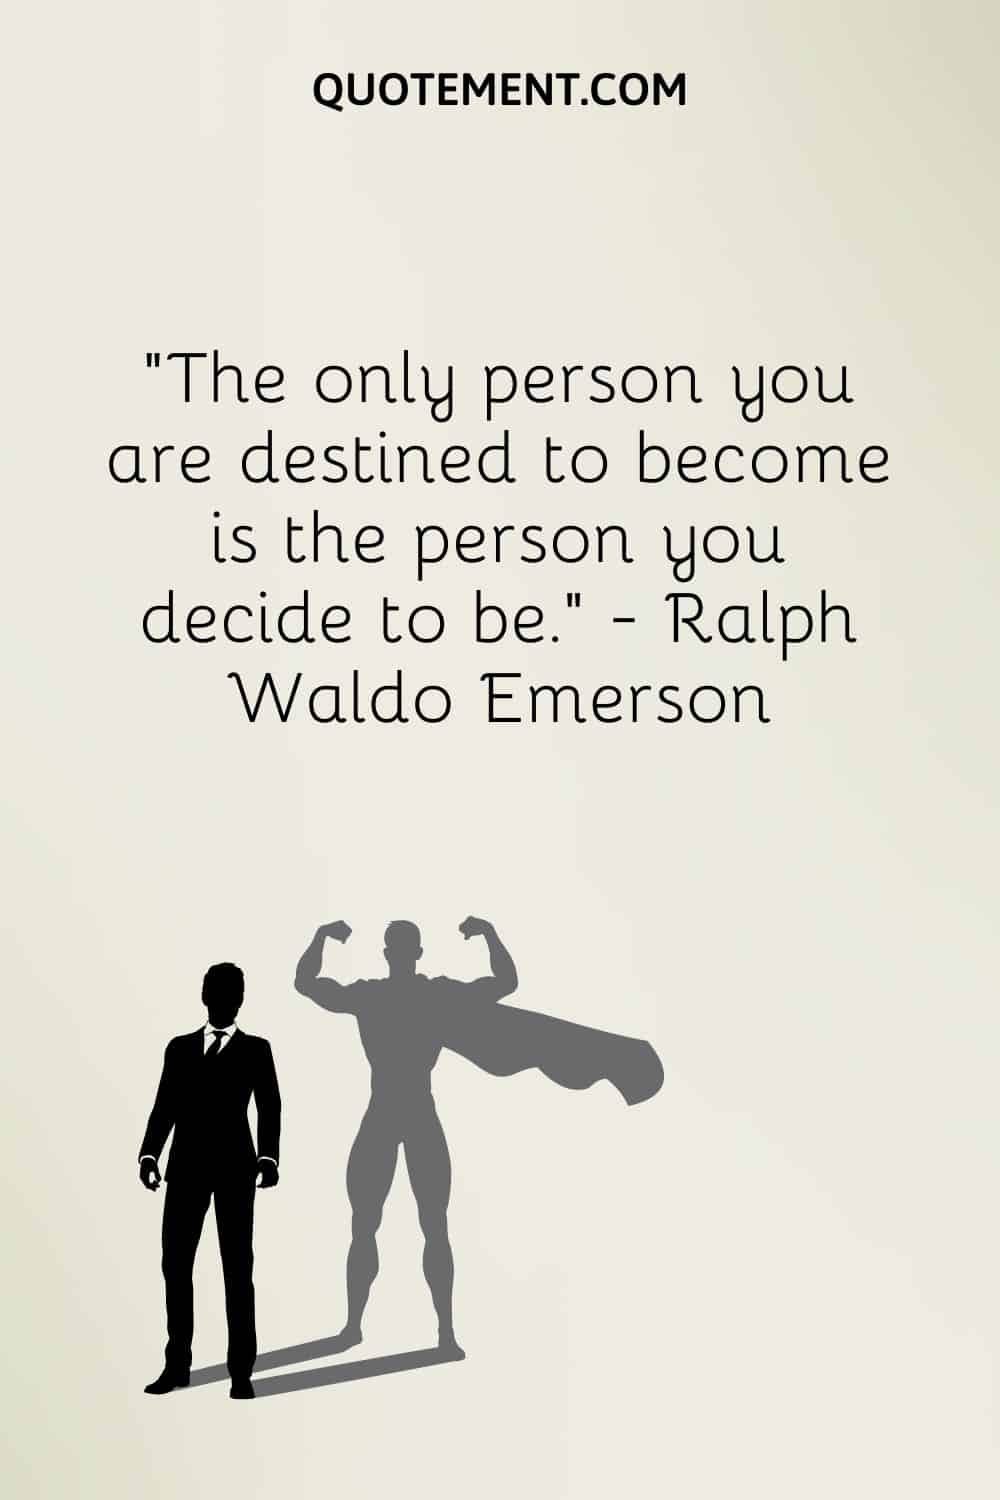 La única persona en la que estás destinado a convertirte es la persona que decides ser